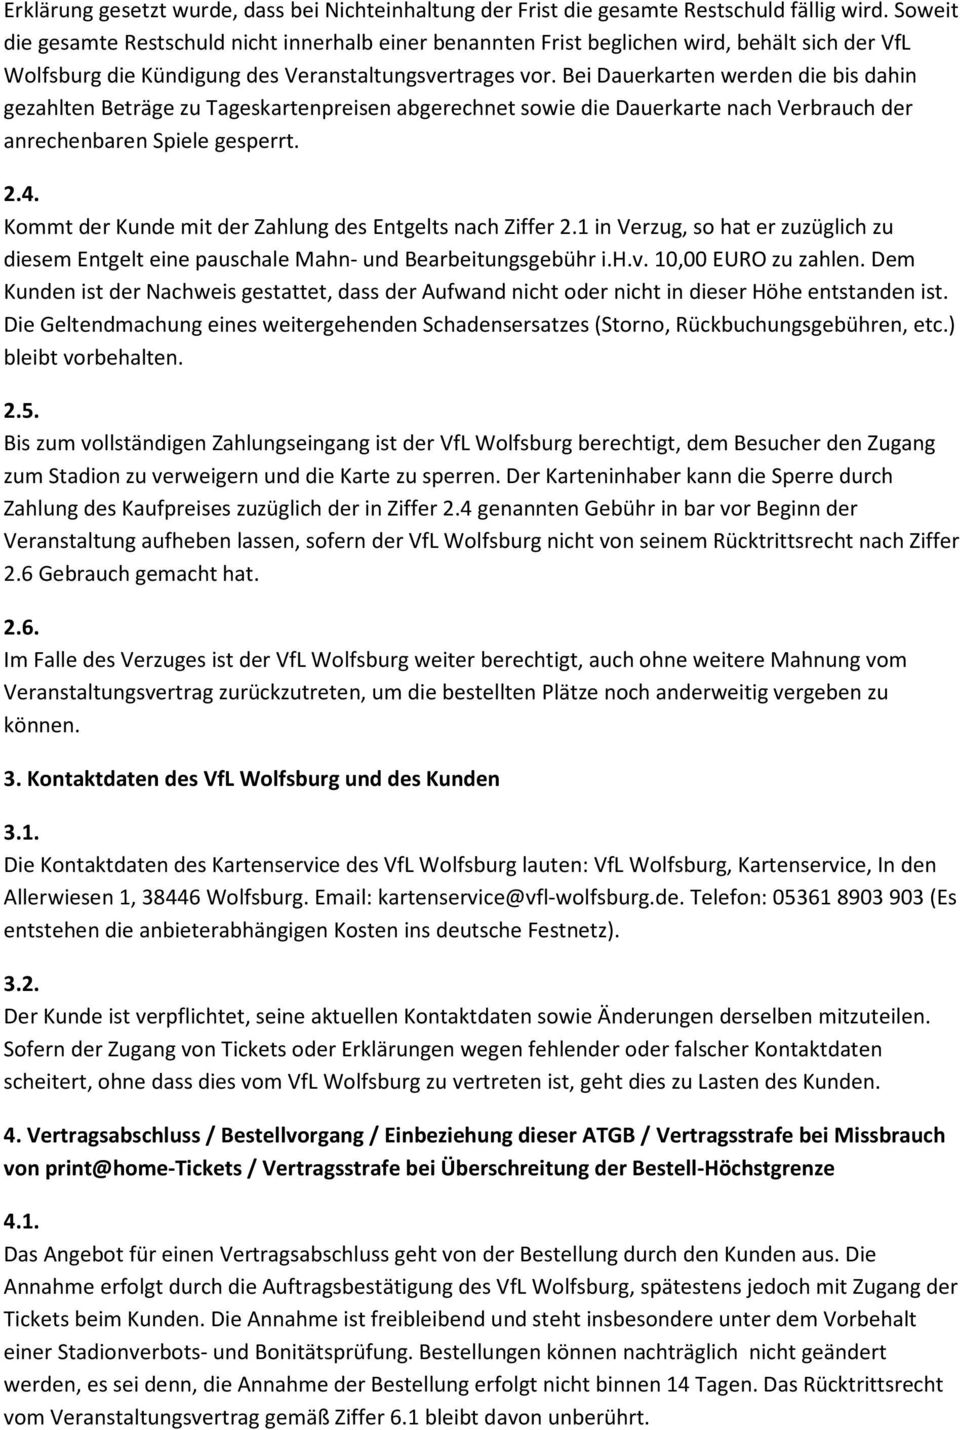 Allgemeine Ticket Geschäftsbedingungen Atgb Der Vfl Wolfsburg